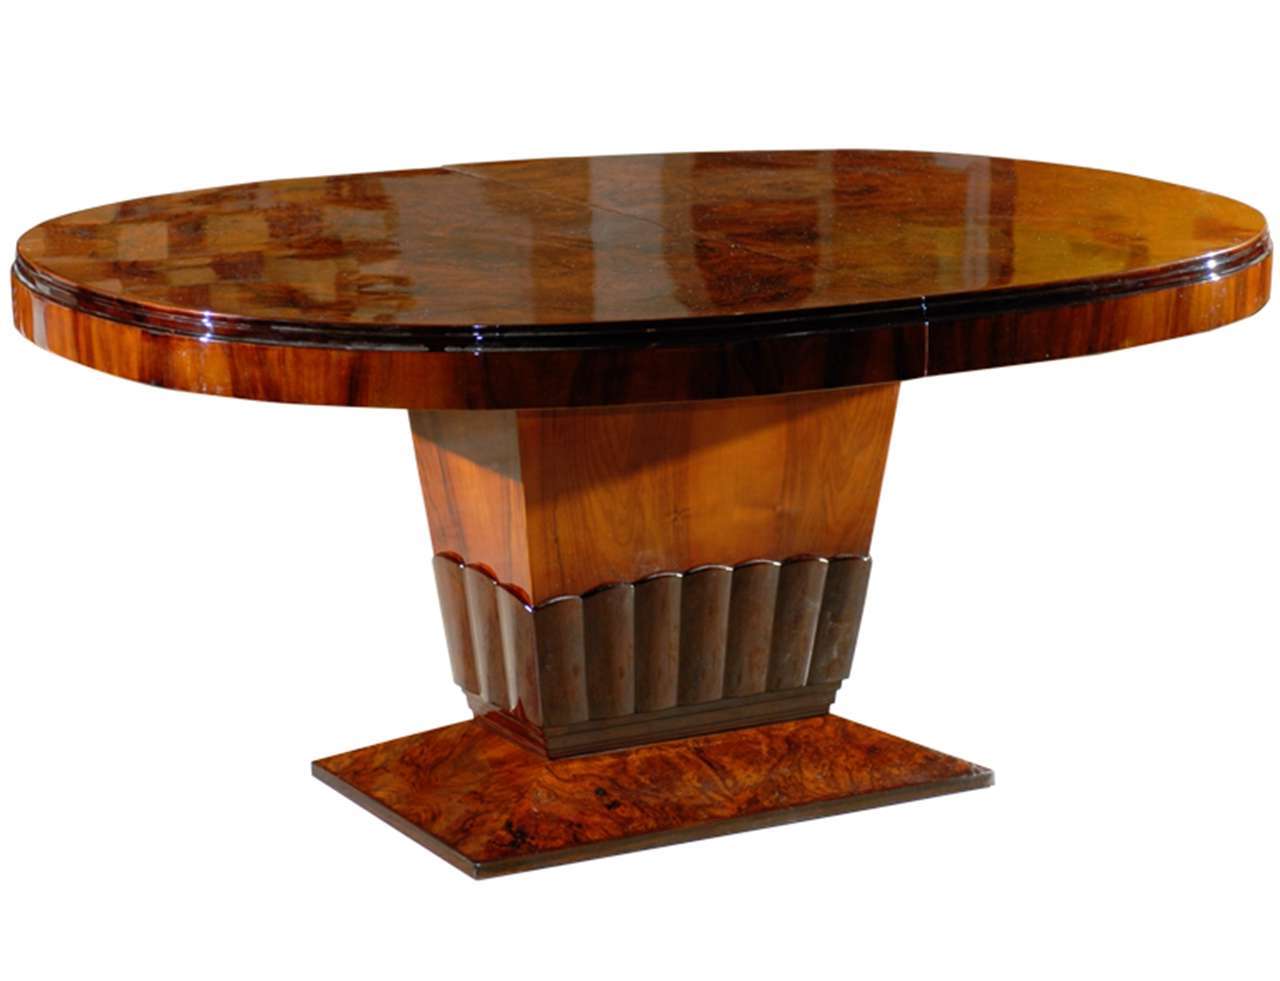 Oval Dining Table Pedestal Base Furniture